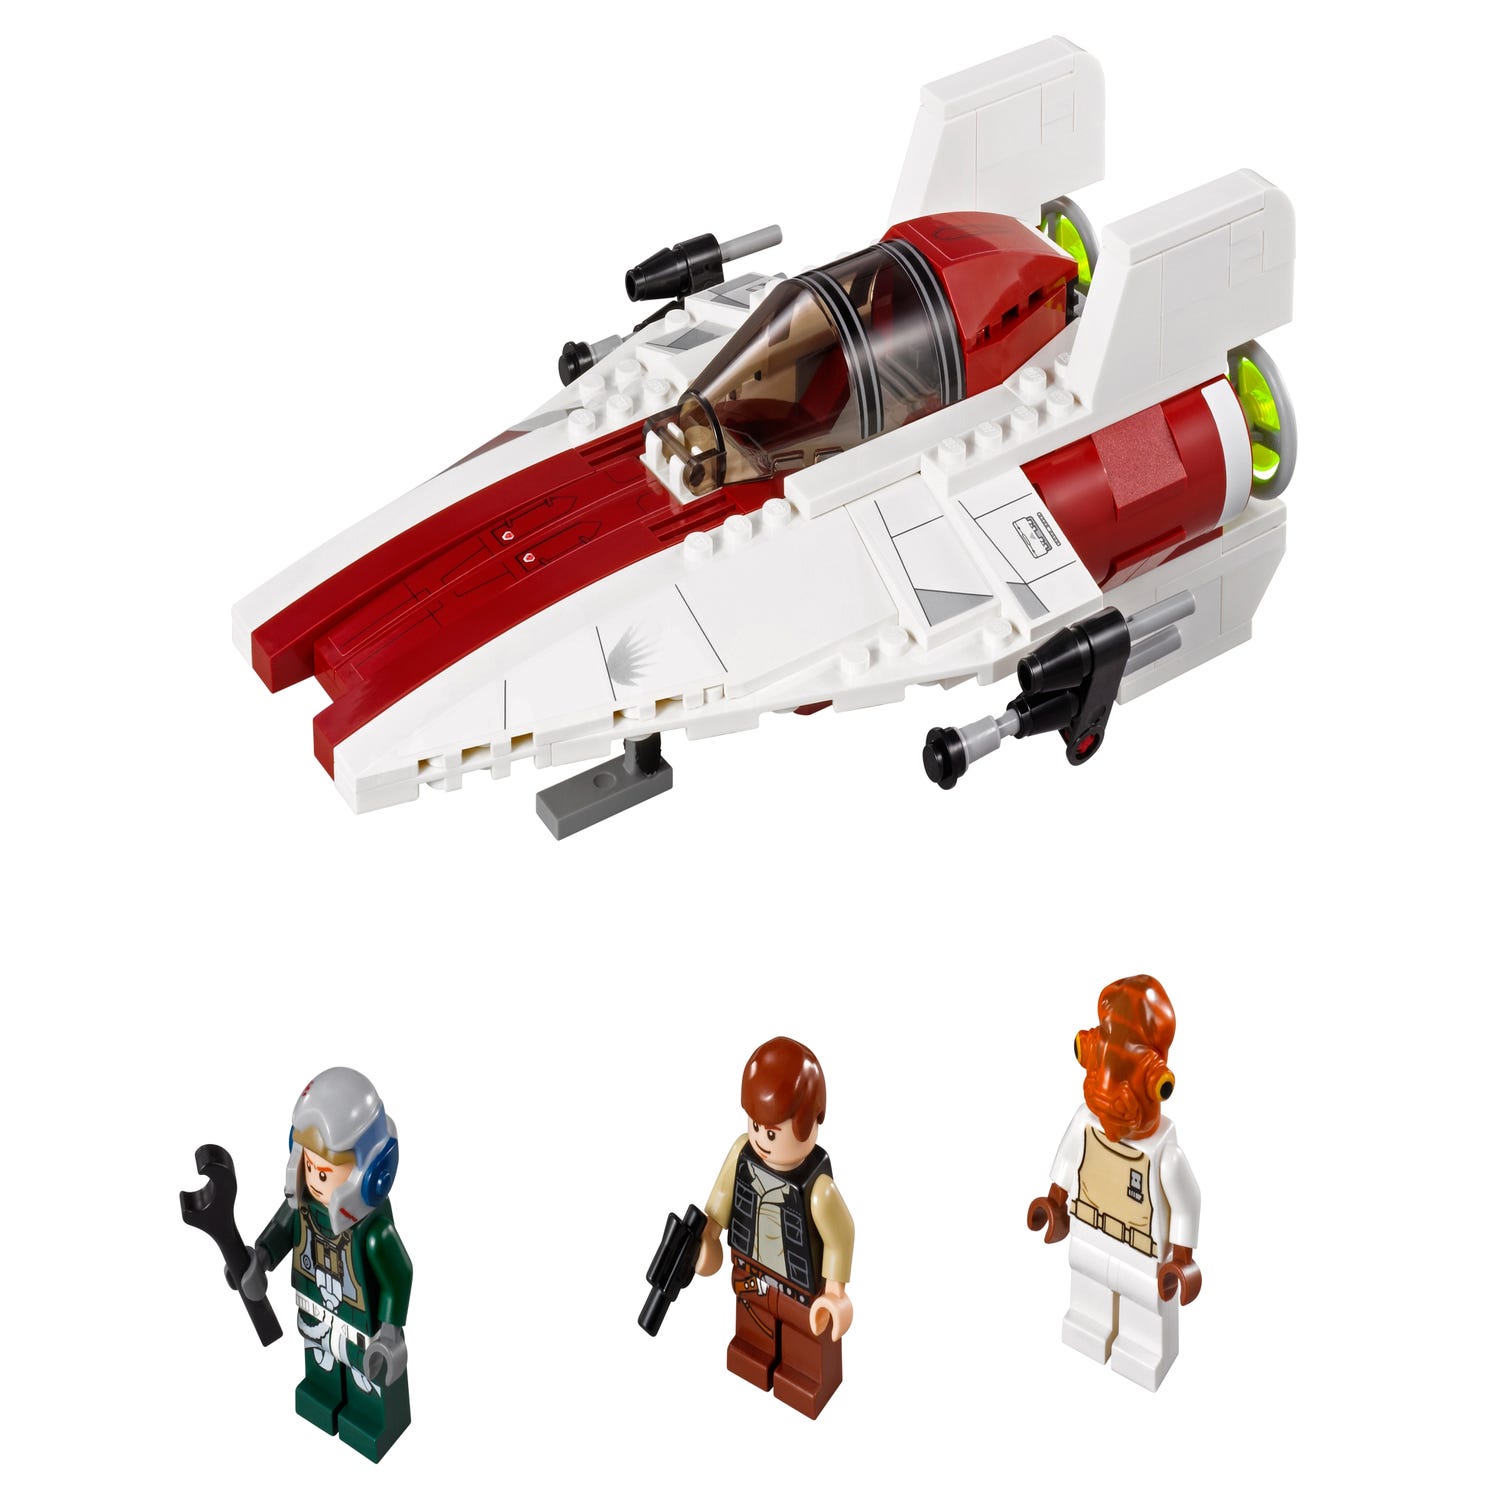 Lego Star Wars 75003 : A-Wing - Lego(R) by Alkinoos